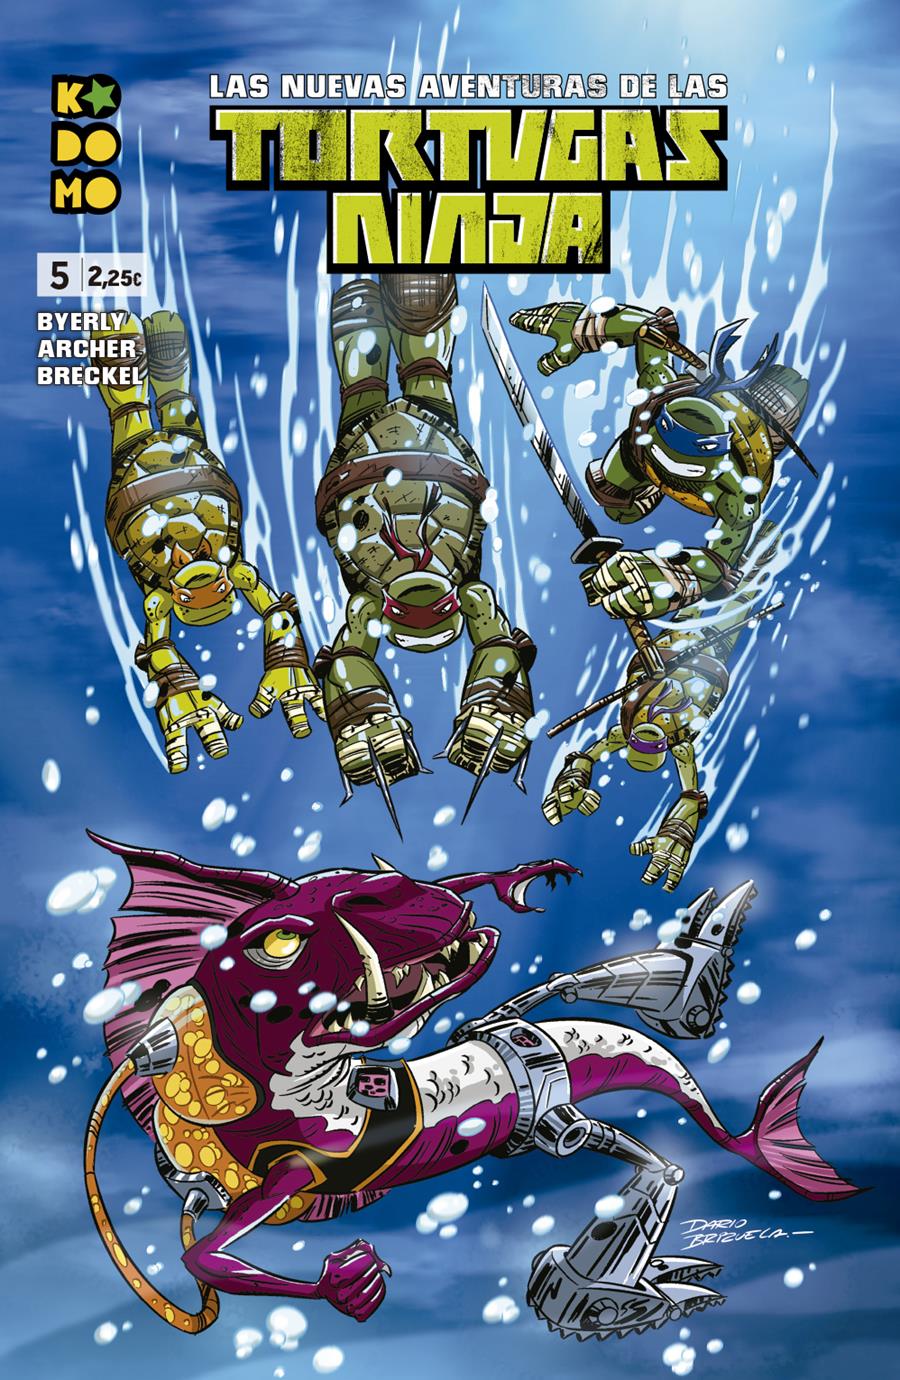 Las nuevas aventuras de las Tortugas Ninja núm. 05 | N0521-ECC60 | Adam Archer / Kenny Byerly | Terra de Còmic - Tu tienda de cómics online especializada en cómics, manga y merchandising